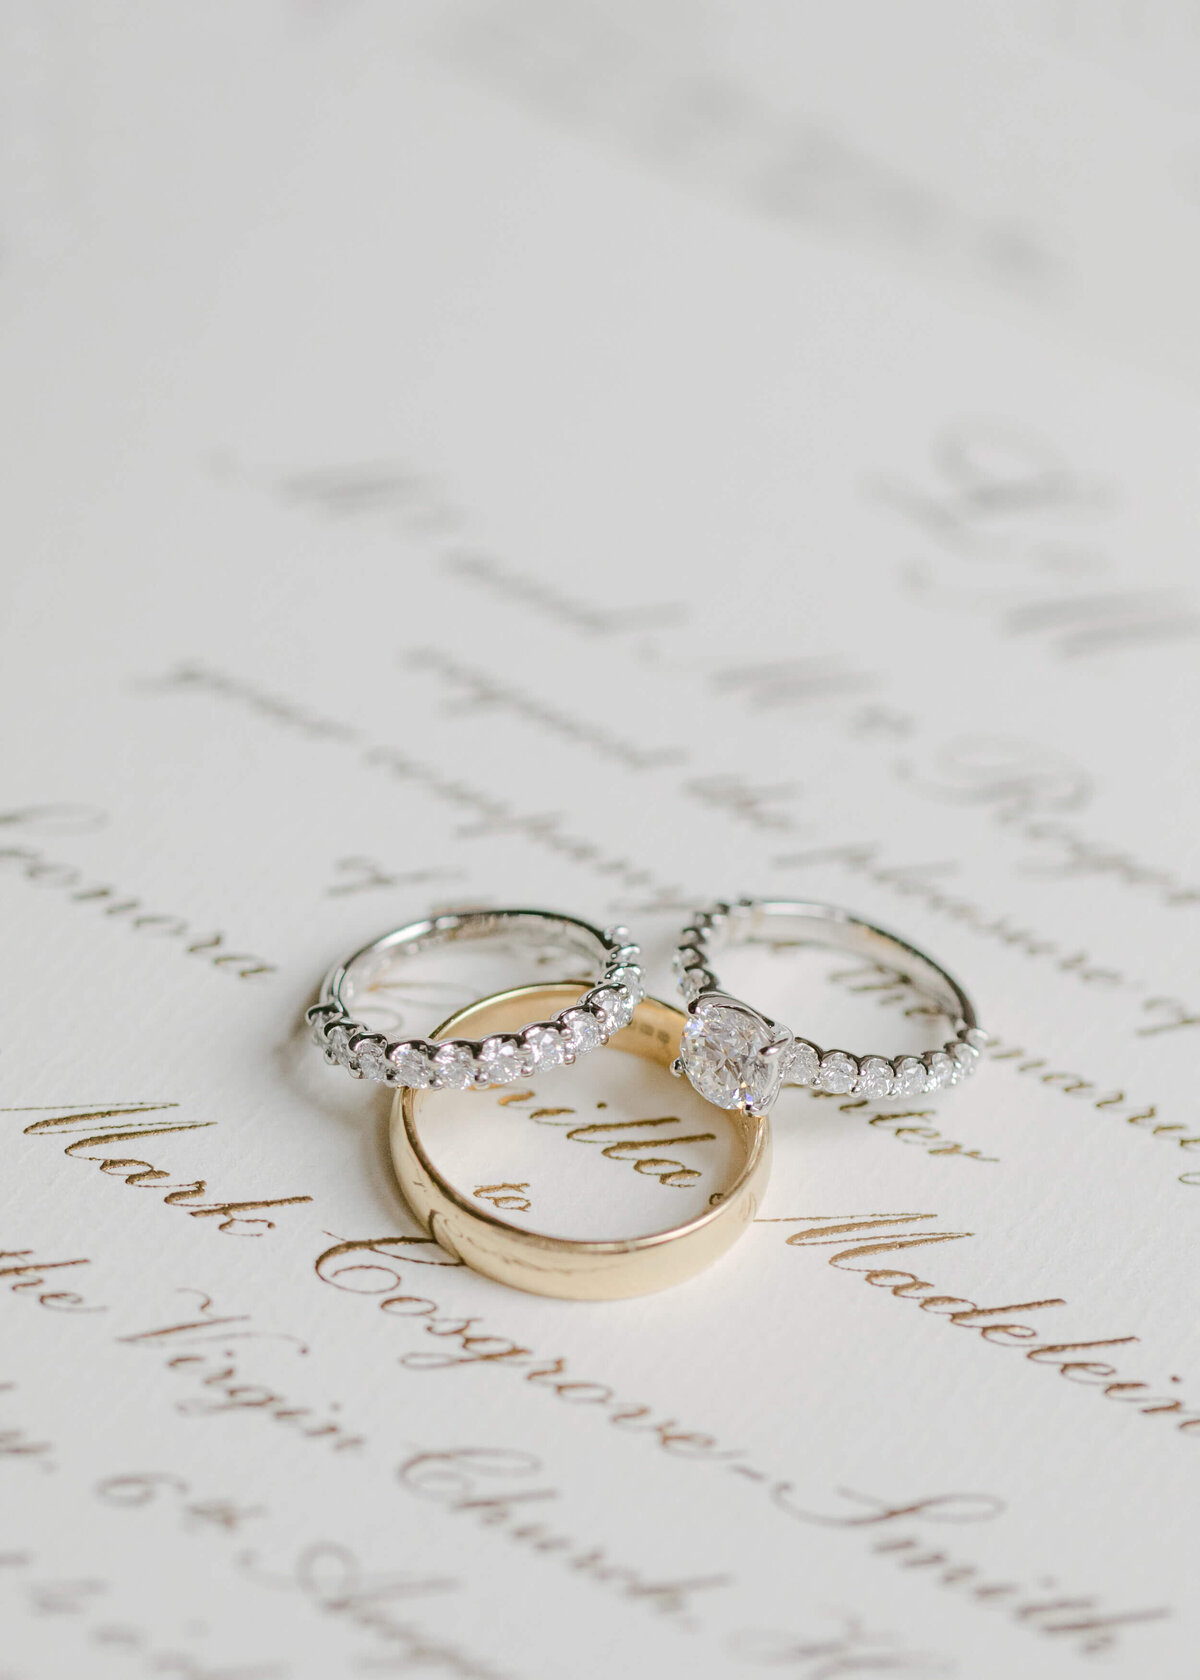 chloe-winstanley-weddings-gee-brothers-invitation-rings